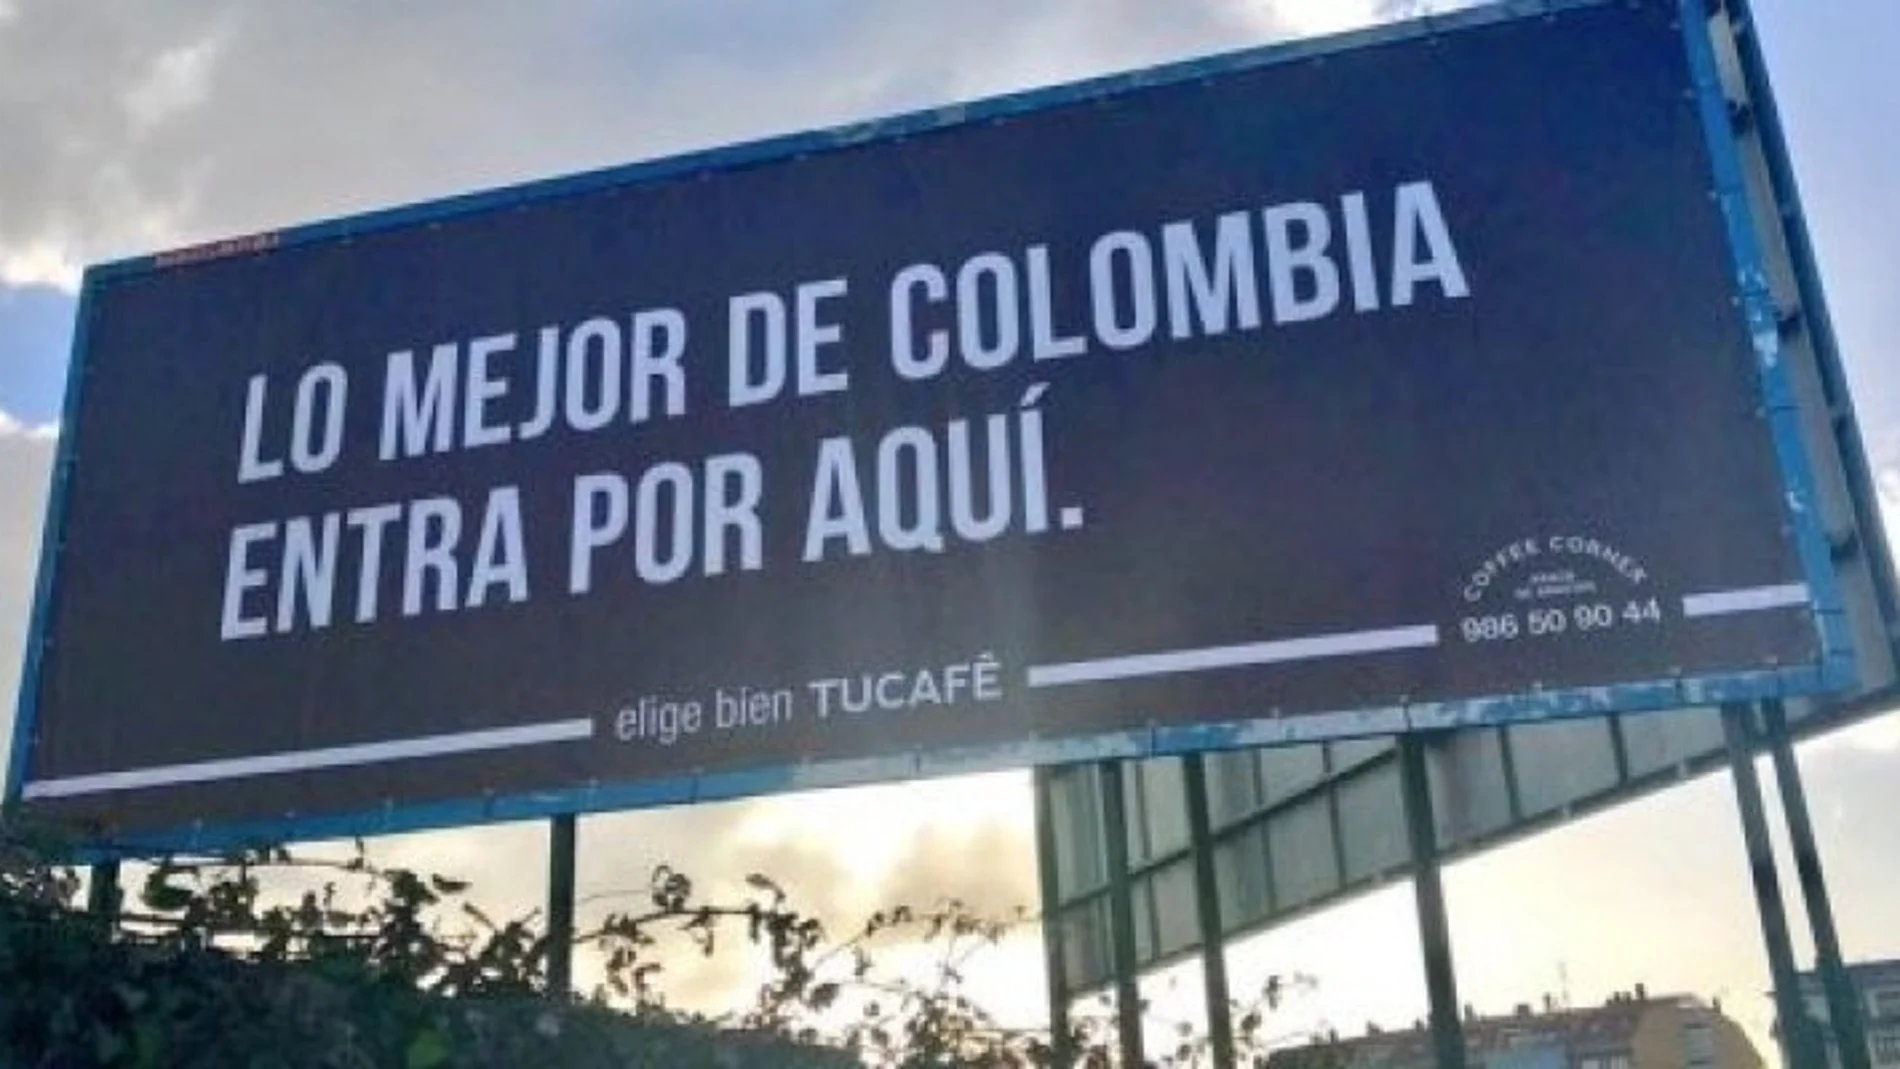 «Lo mejor de Colombia entra por aquí», la valla publicitaria de Villagarcía de Arosa que se ha hecho viral